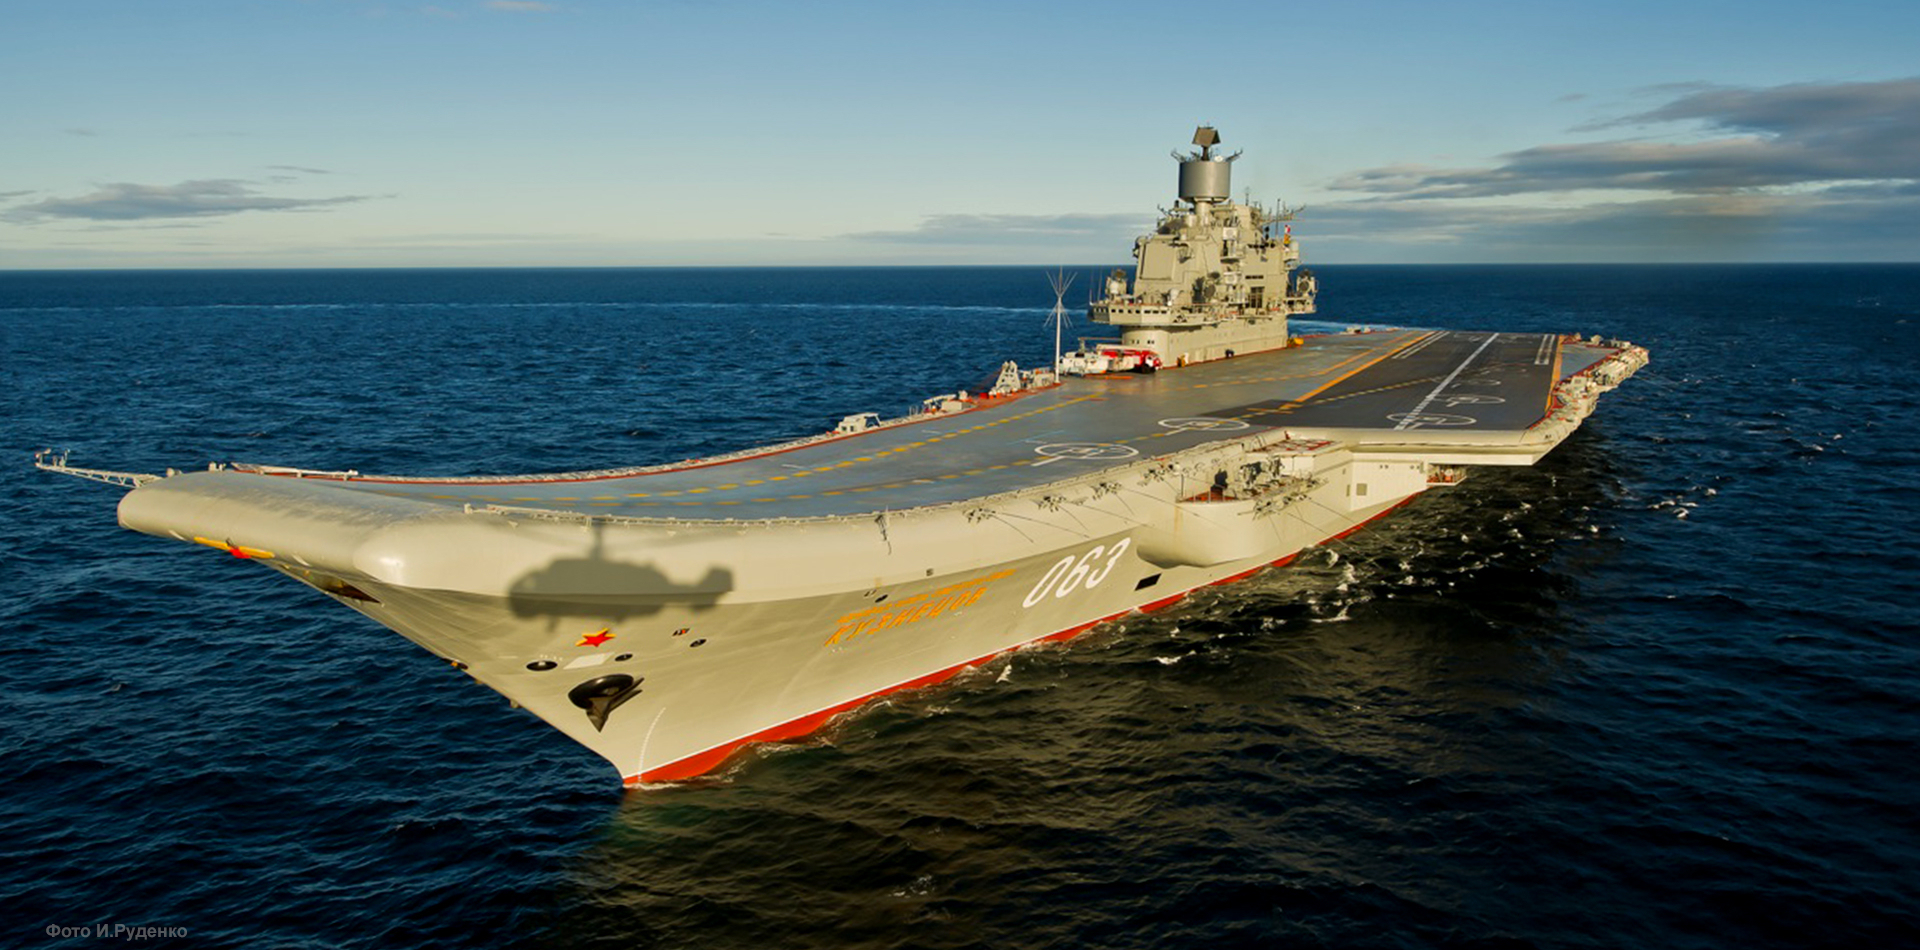 Admiral_Kuznetsov_aircraft_carrier.jpg